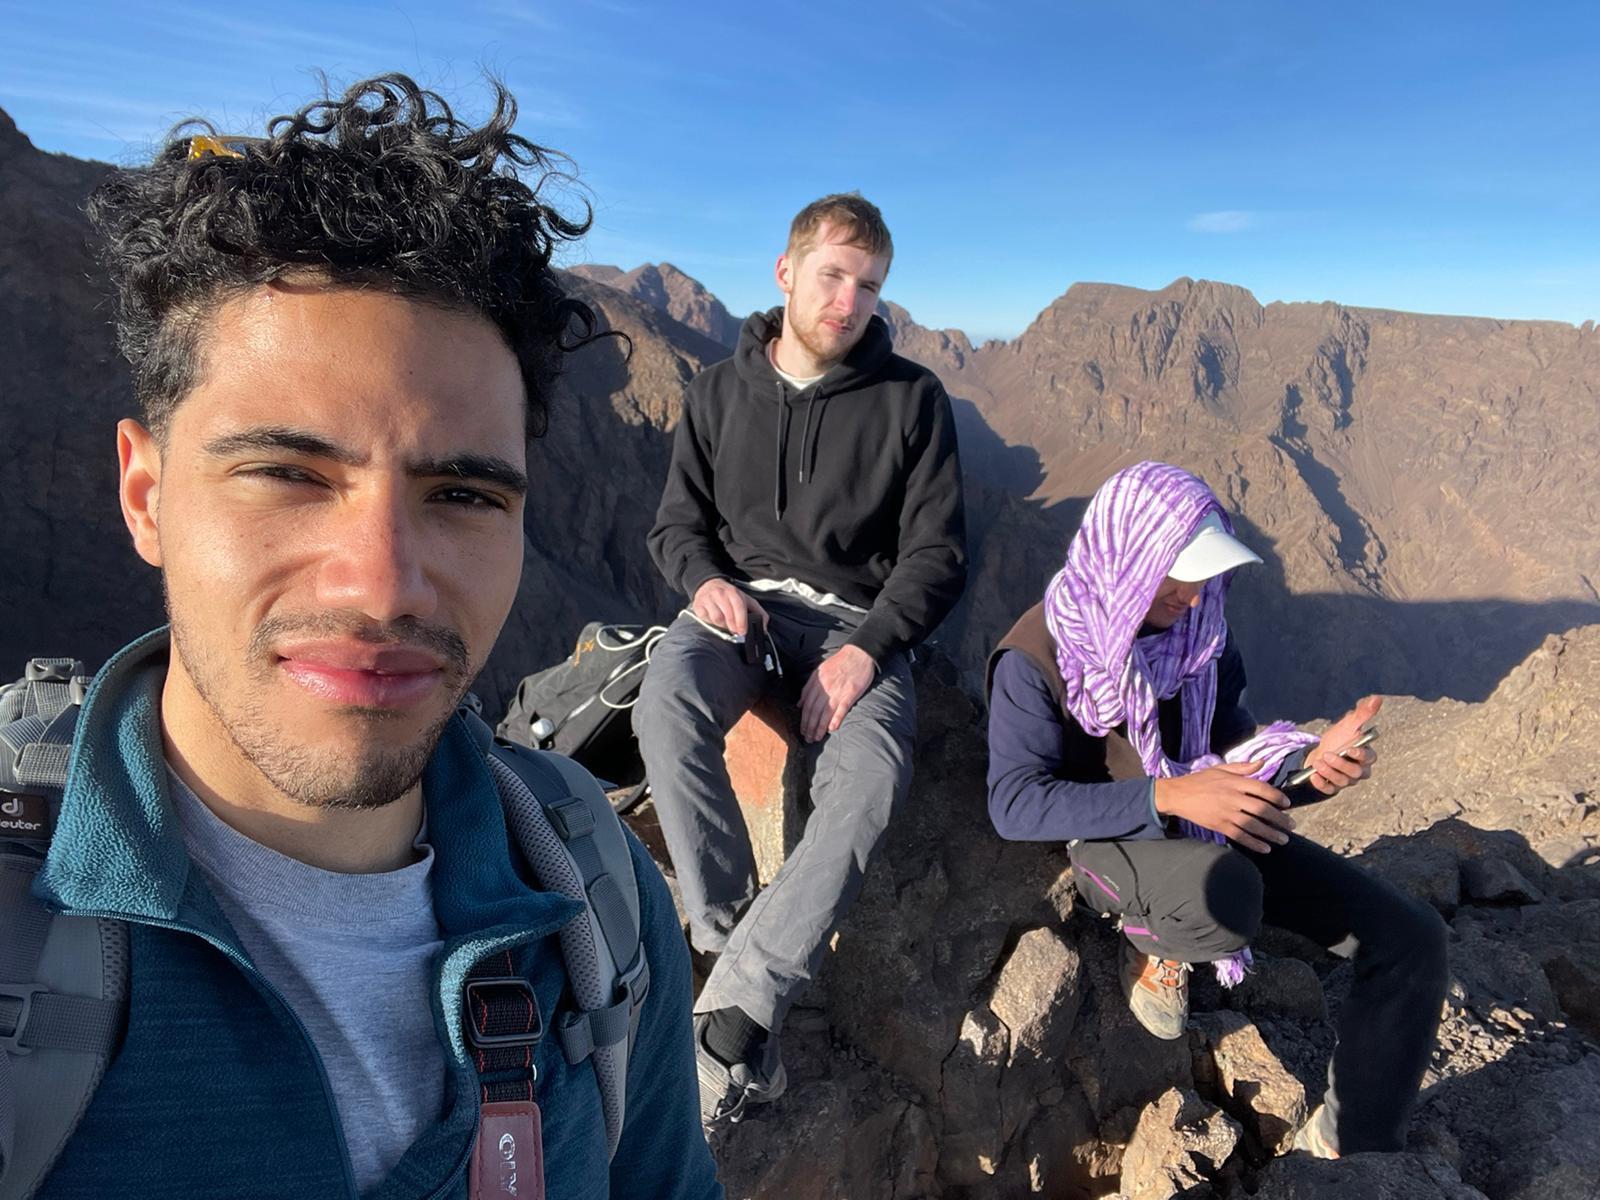 Mount-Toubkal-2-days-trekking-from-Marrakech-1